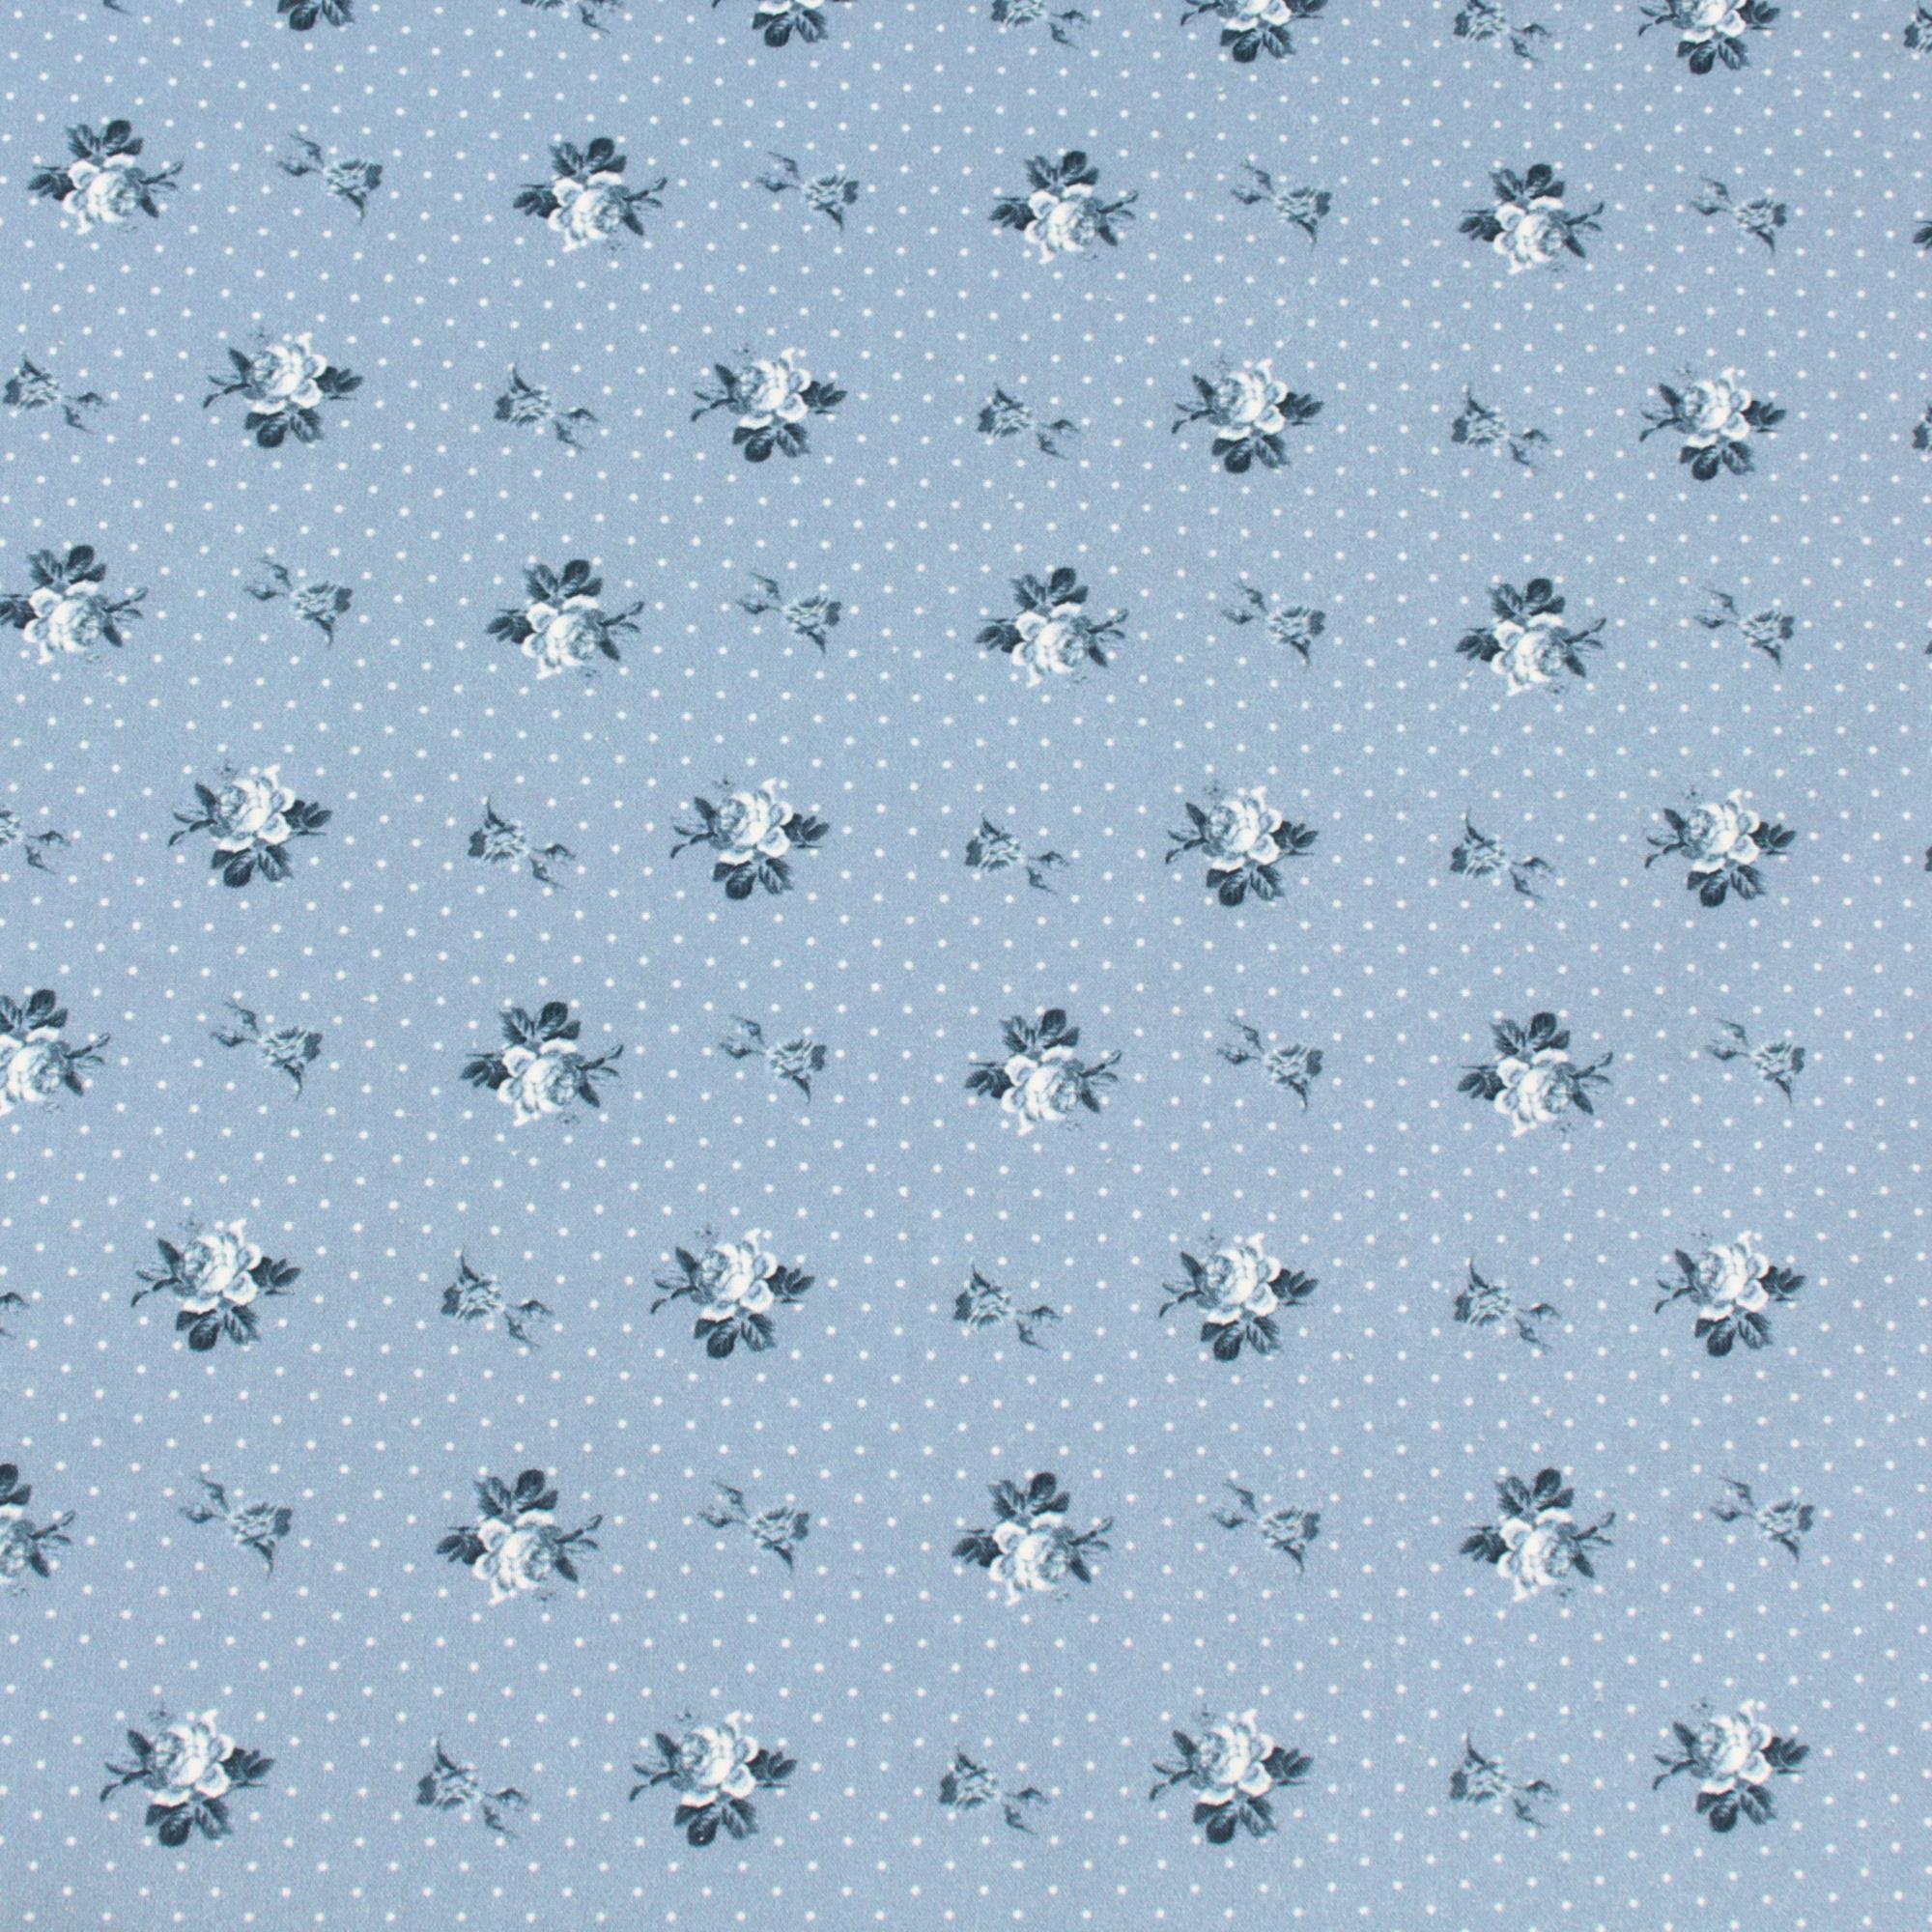 Stoff Meterware kleine Rosen Punkte Blau Baumwolle Perkal